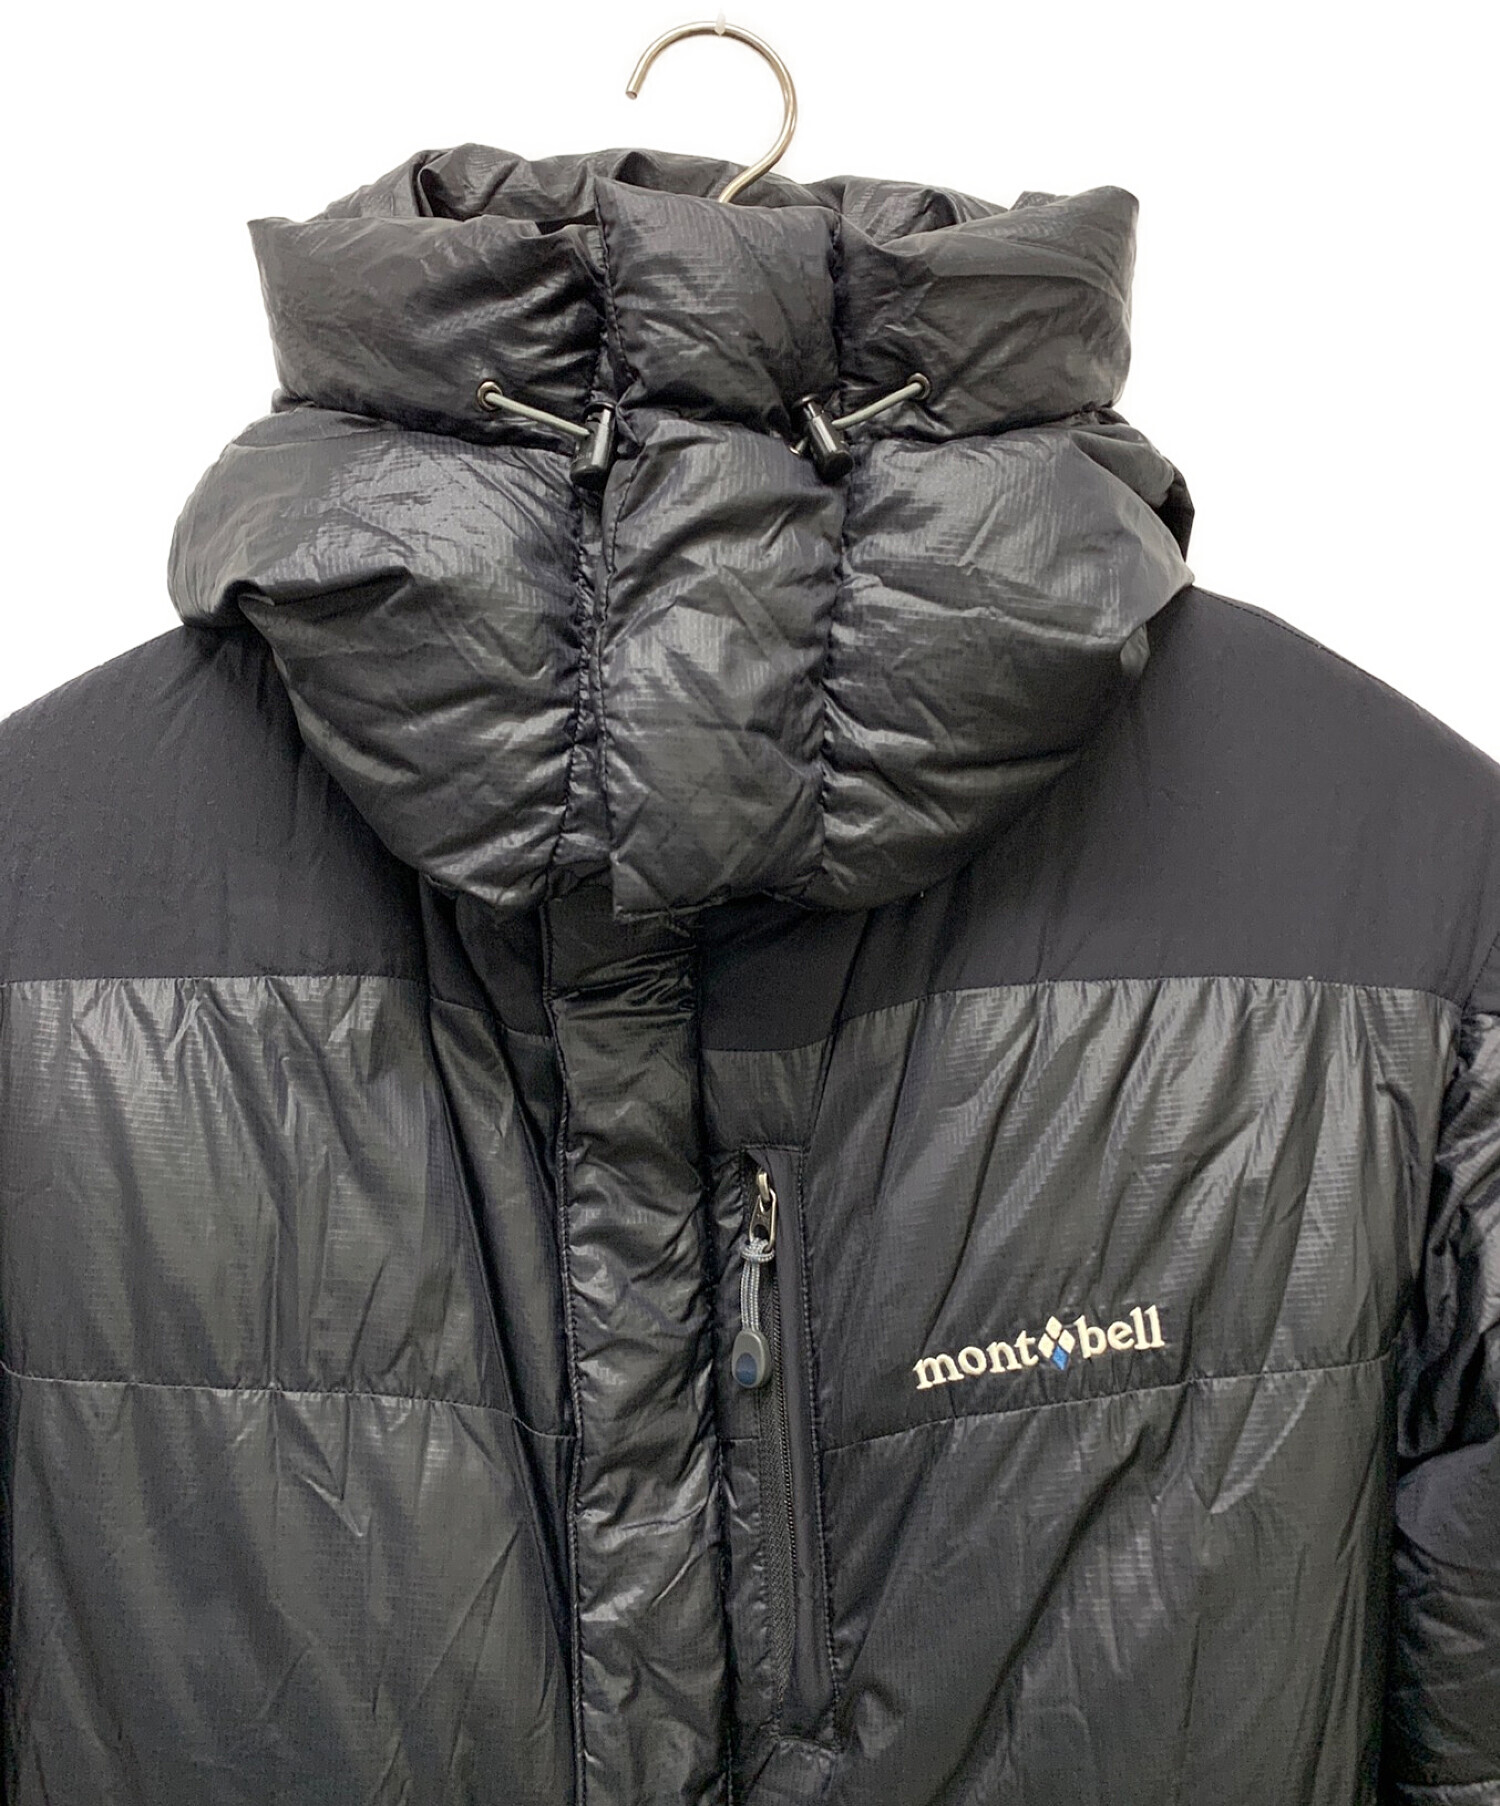 mont-bell (モンベル) ベンティスカダウンジャケット ブラック サイズ:M